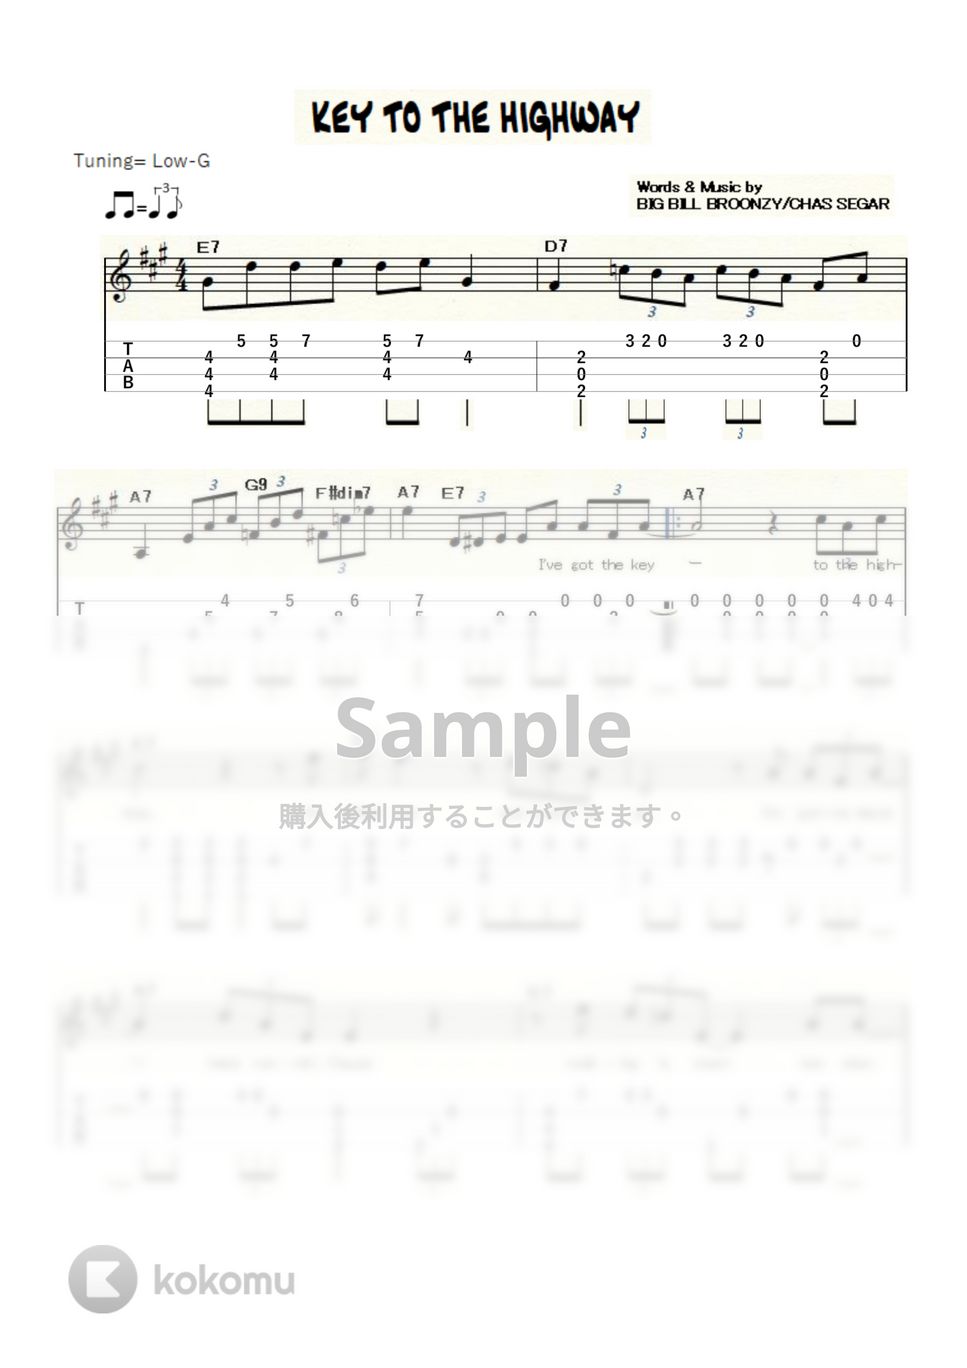 ビッグ・ビル・ブルーンジー - Key to the Highway (ｳｸﾚﾚｿﾛ/Low-G/中級) by ukulelepapa